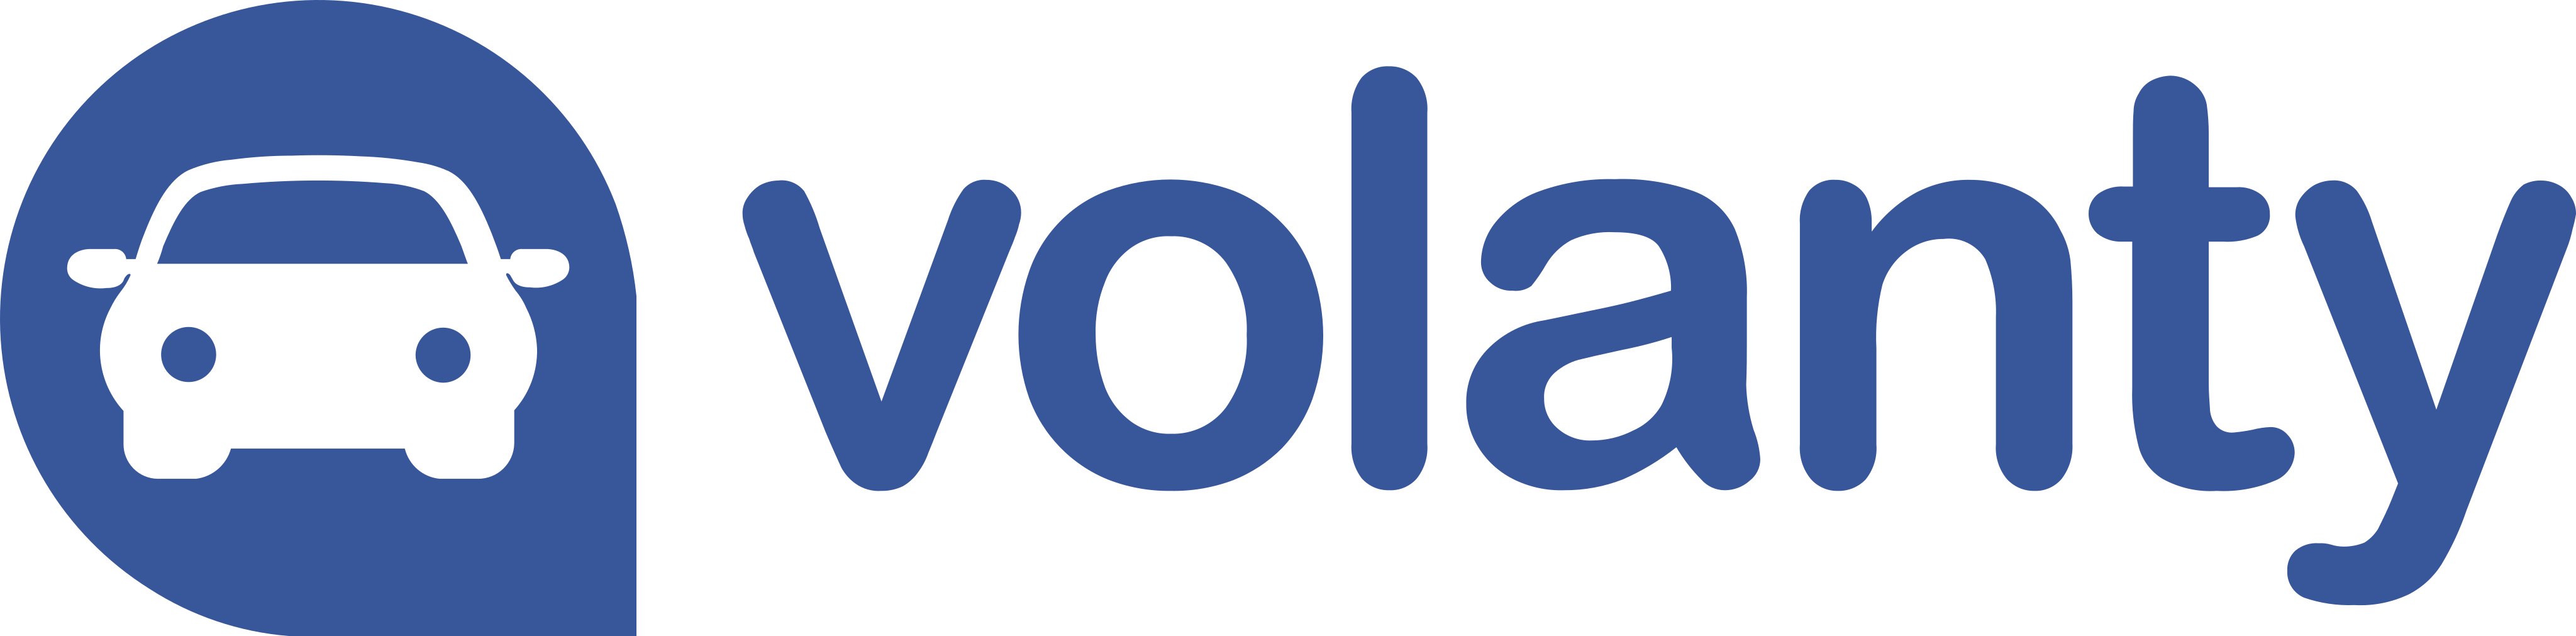 Volanty Logo.